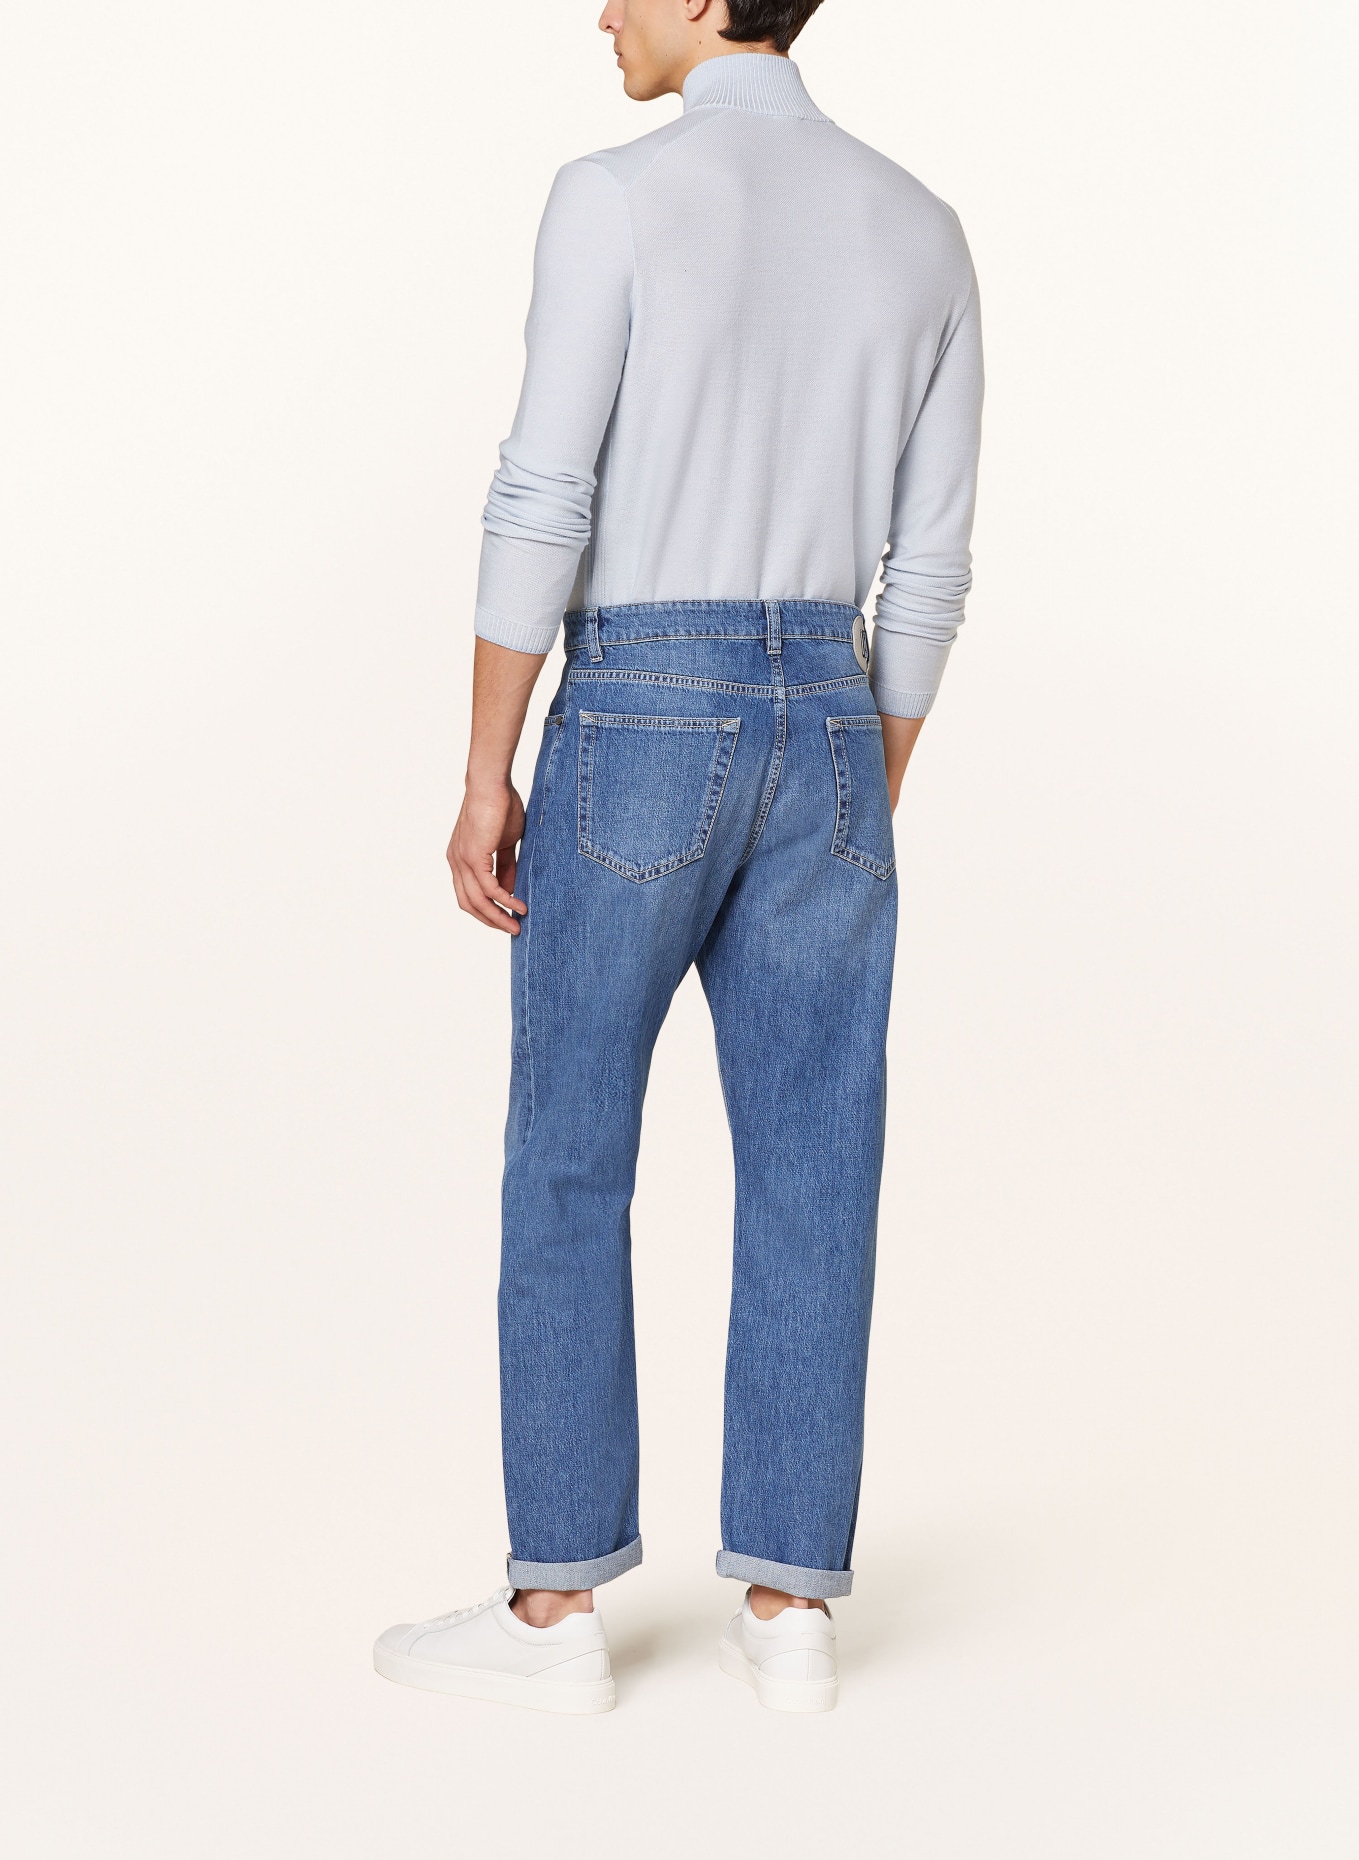 BOGNER Jeans BRIAN tapered fit, Color: 416 denim light (Image 3)